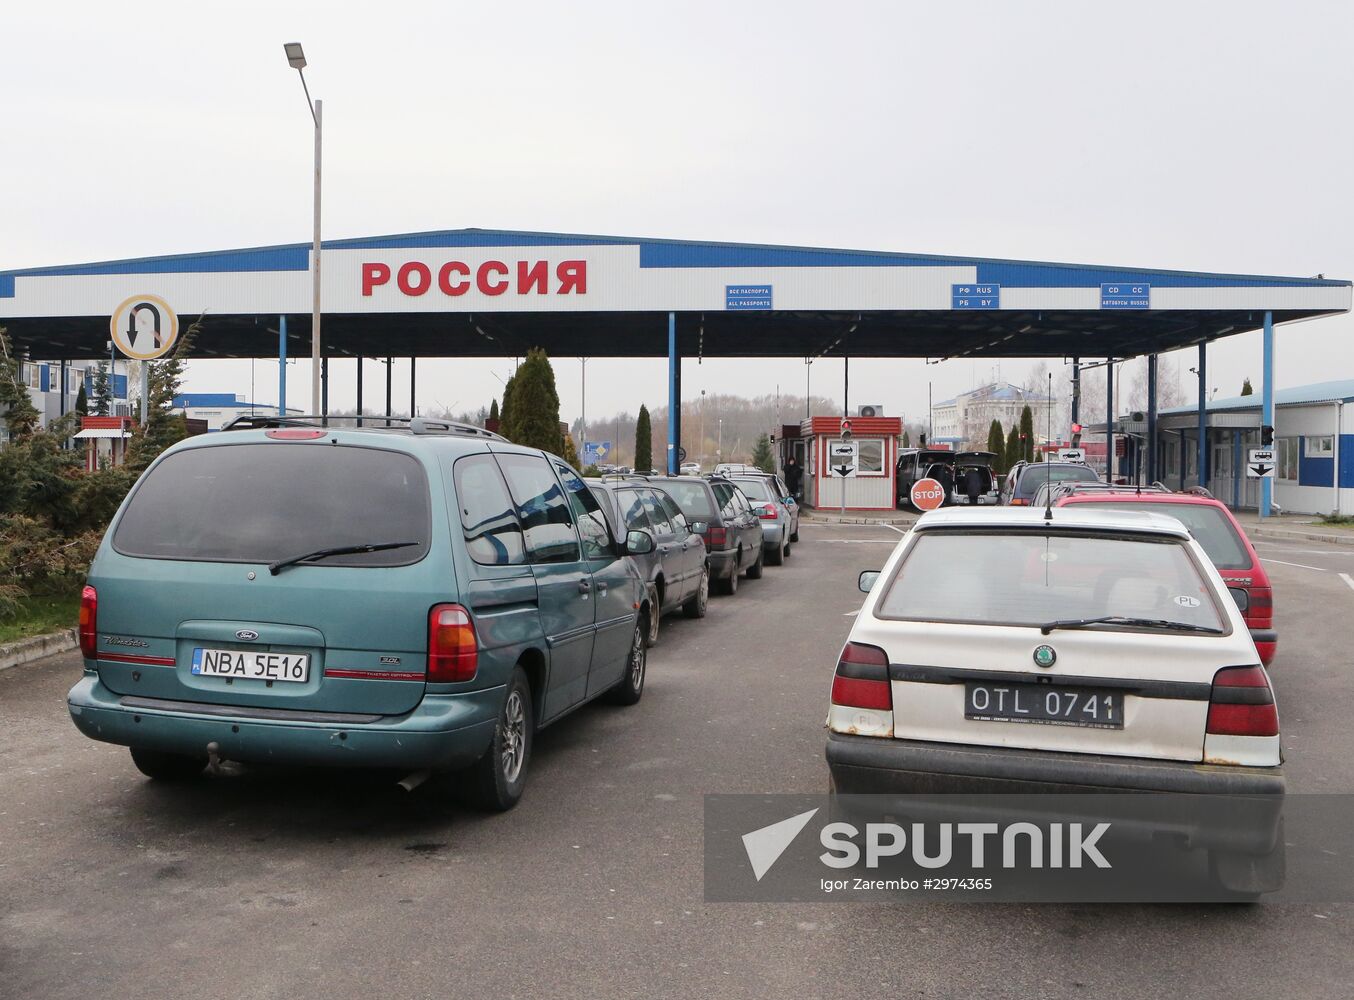 Bagrationovsk customs checkpoint in Kaliningrad Region